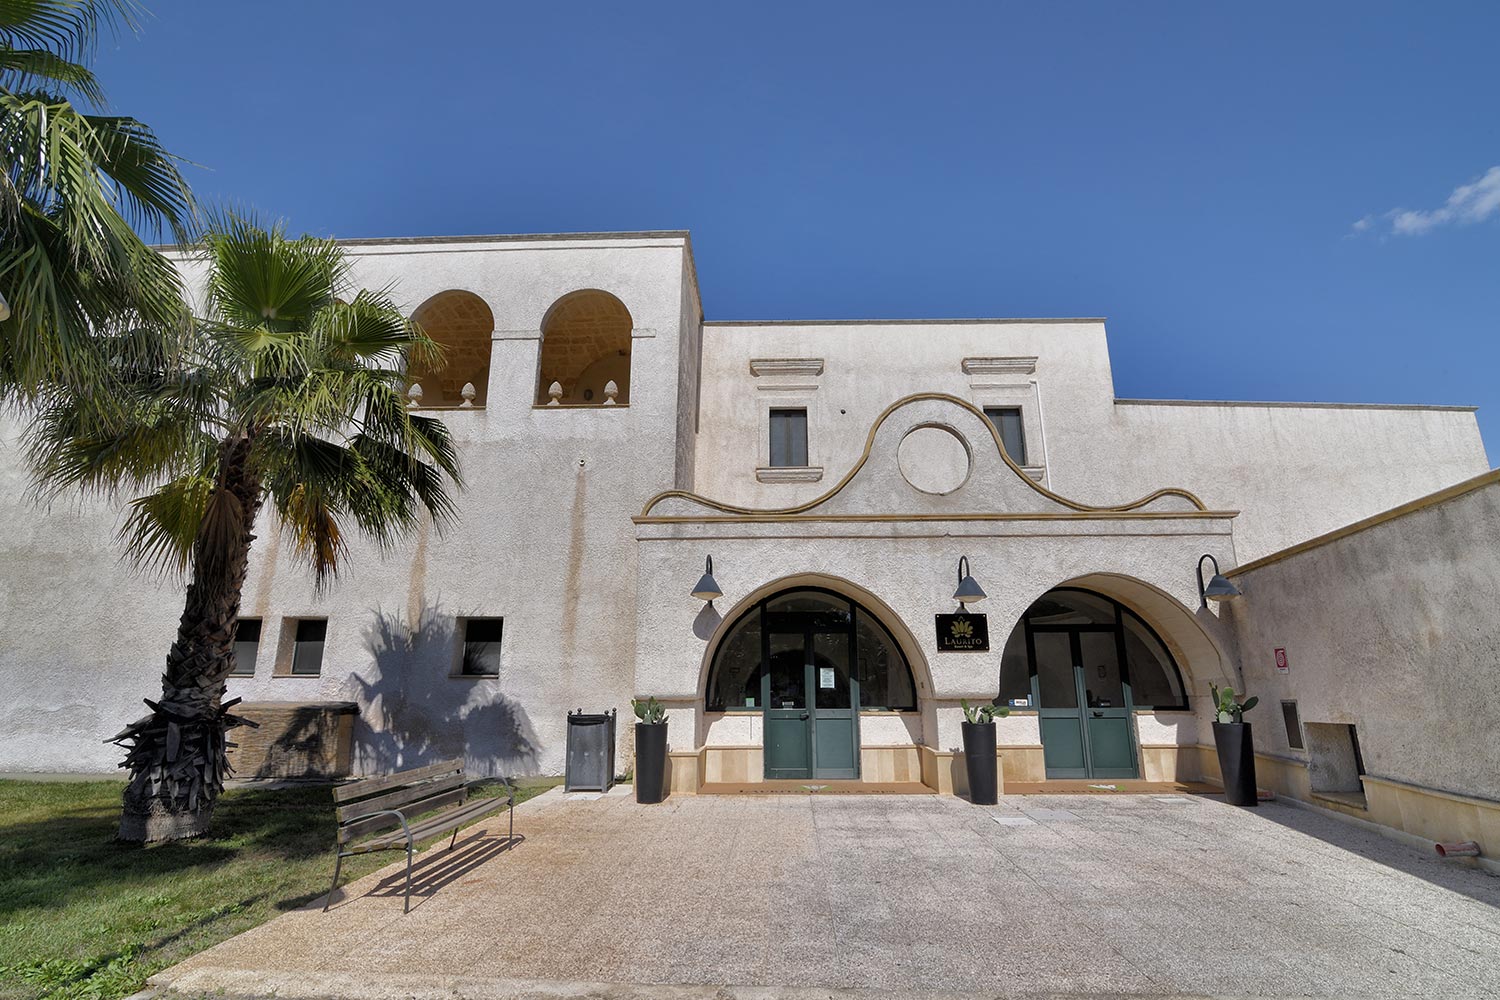 Hotel Residence con parco per bambini a Oria Brindisi in Puglia